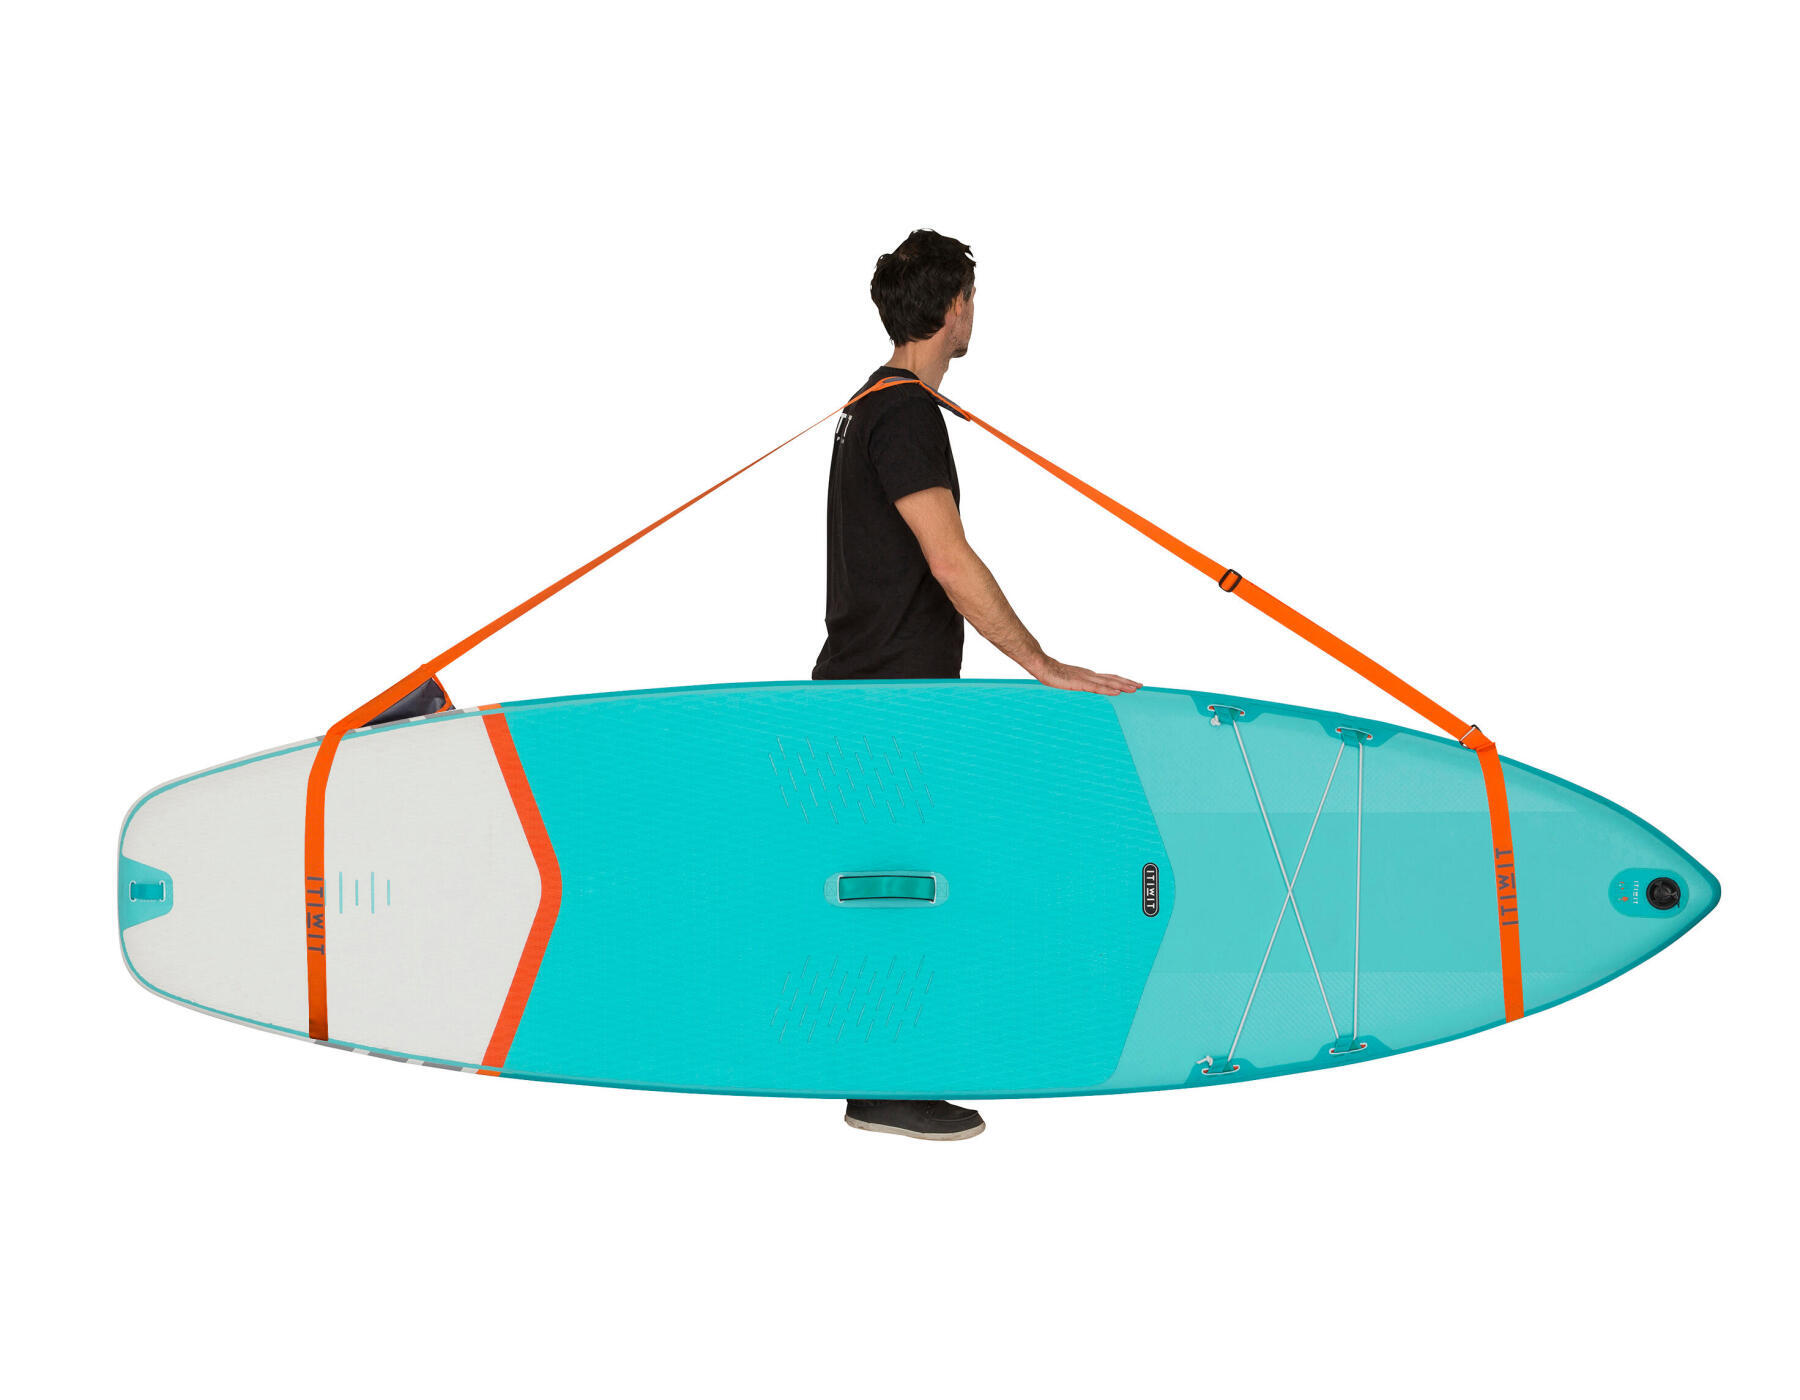 Como transportar a prancha de stand up paddle insuflável?